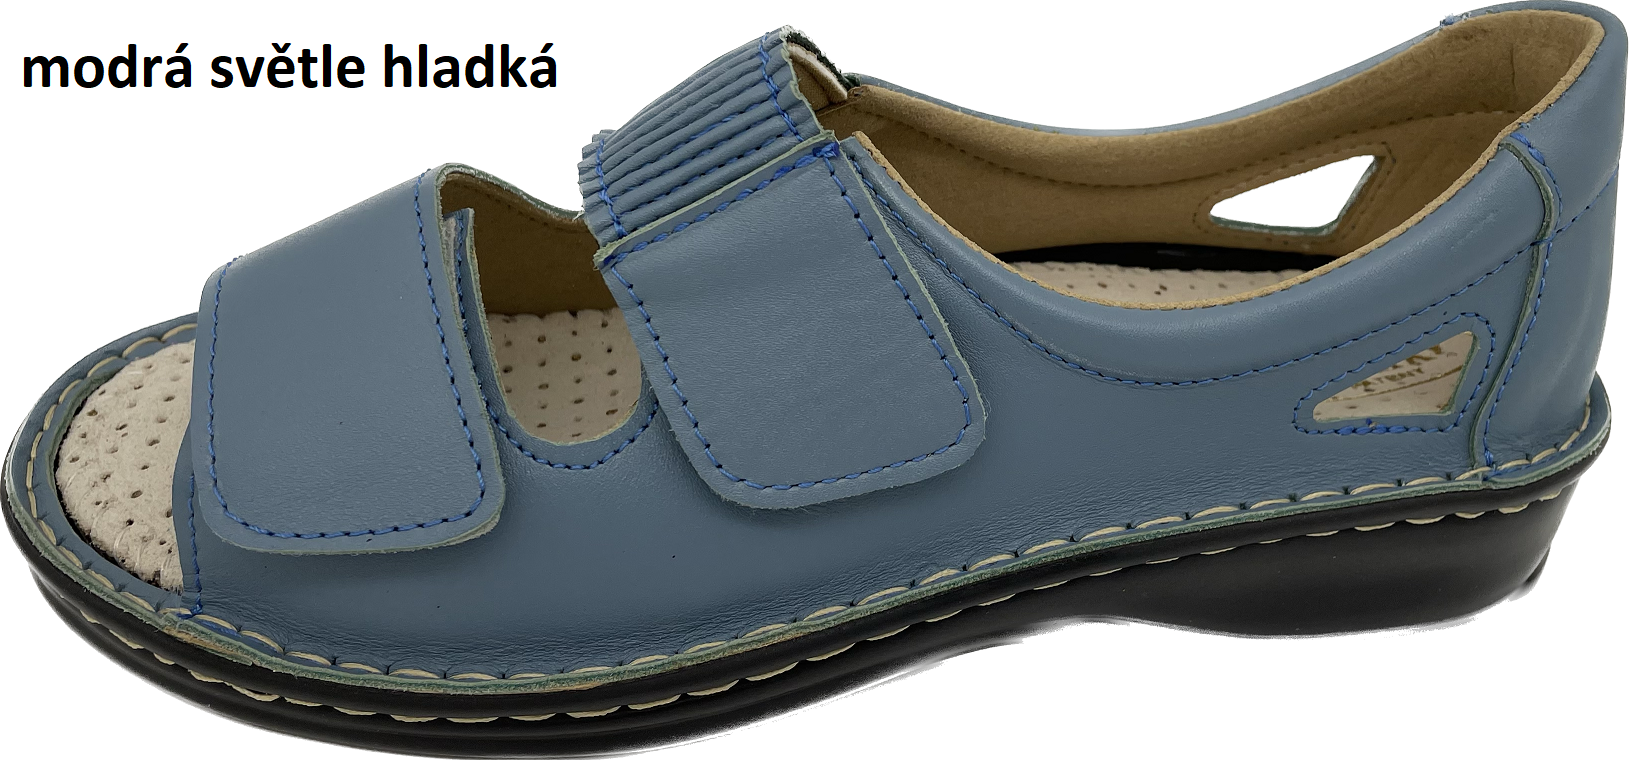 Boty Hanák vzor 306 - černá podešev Barva usně: modrá světle hladká, Velikosti obuvi: 35